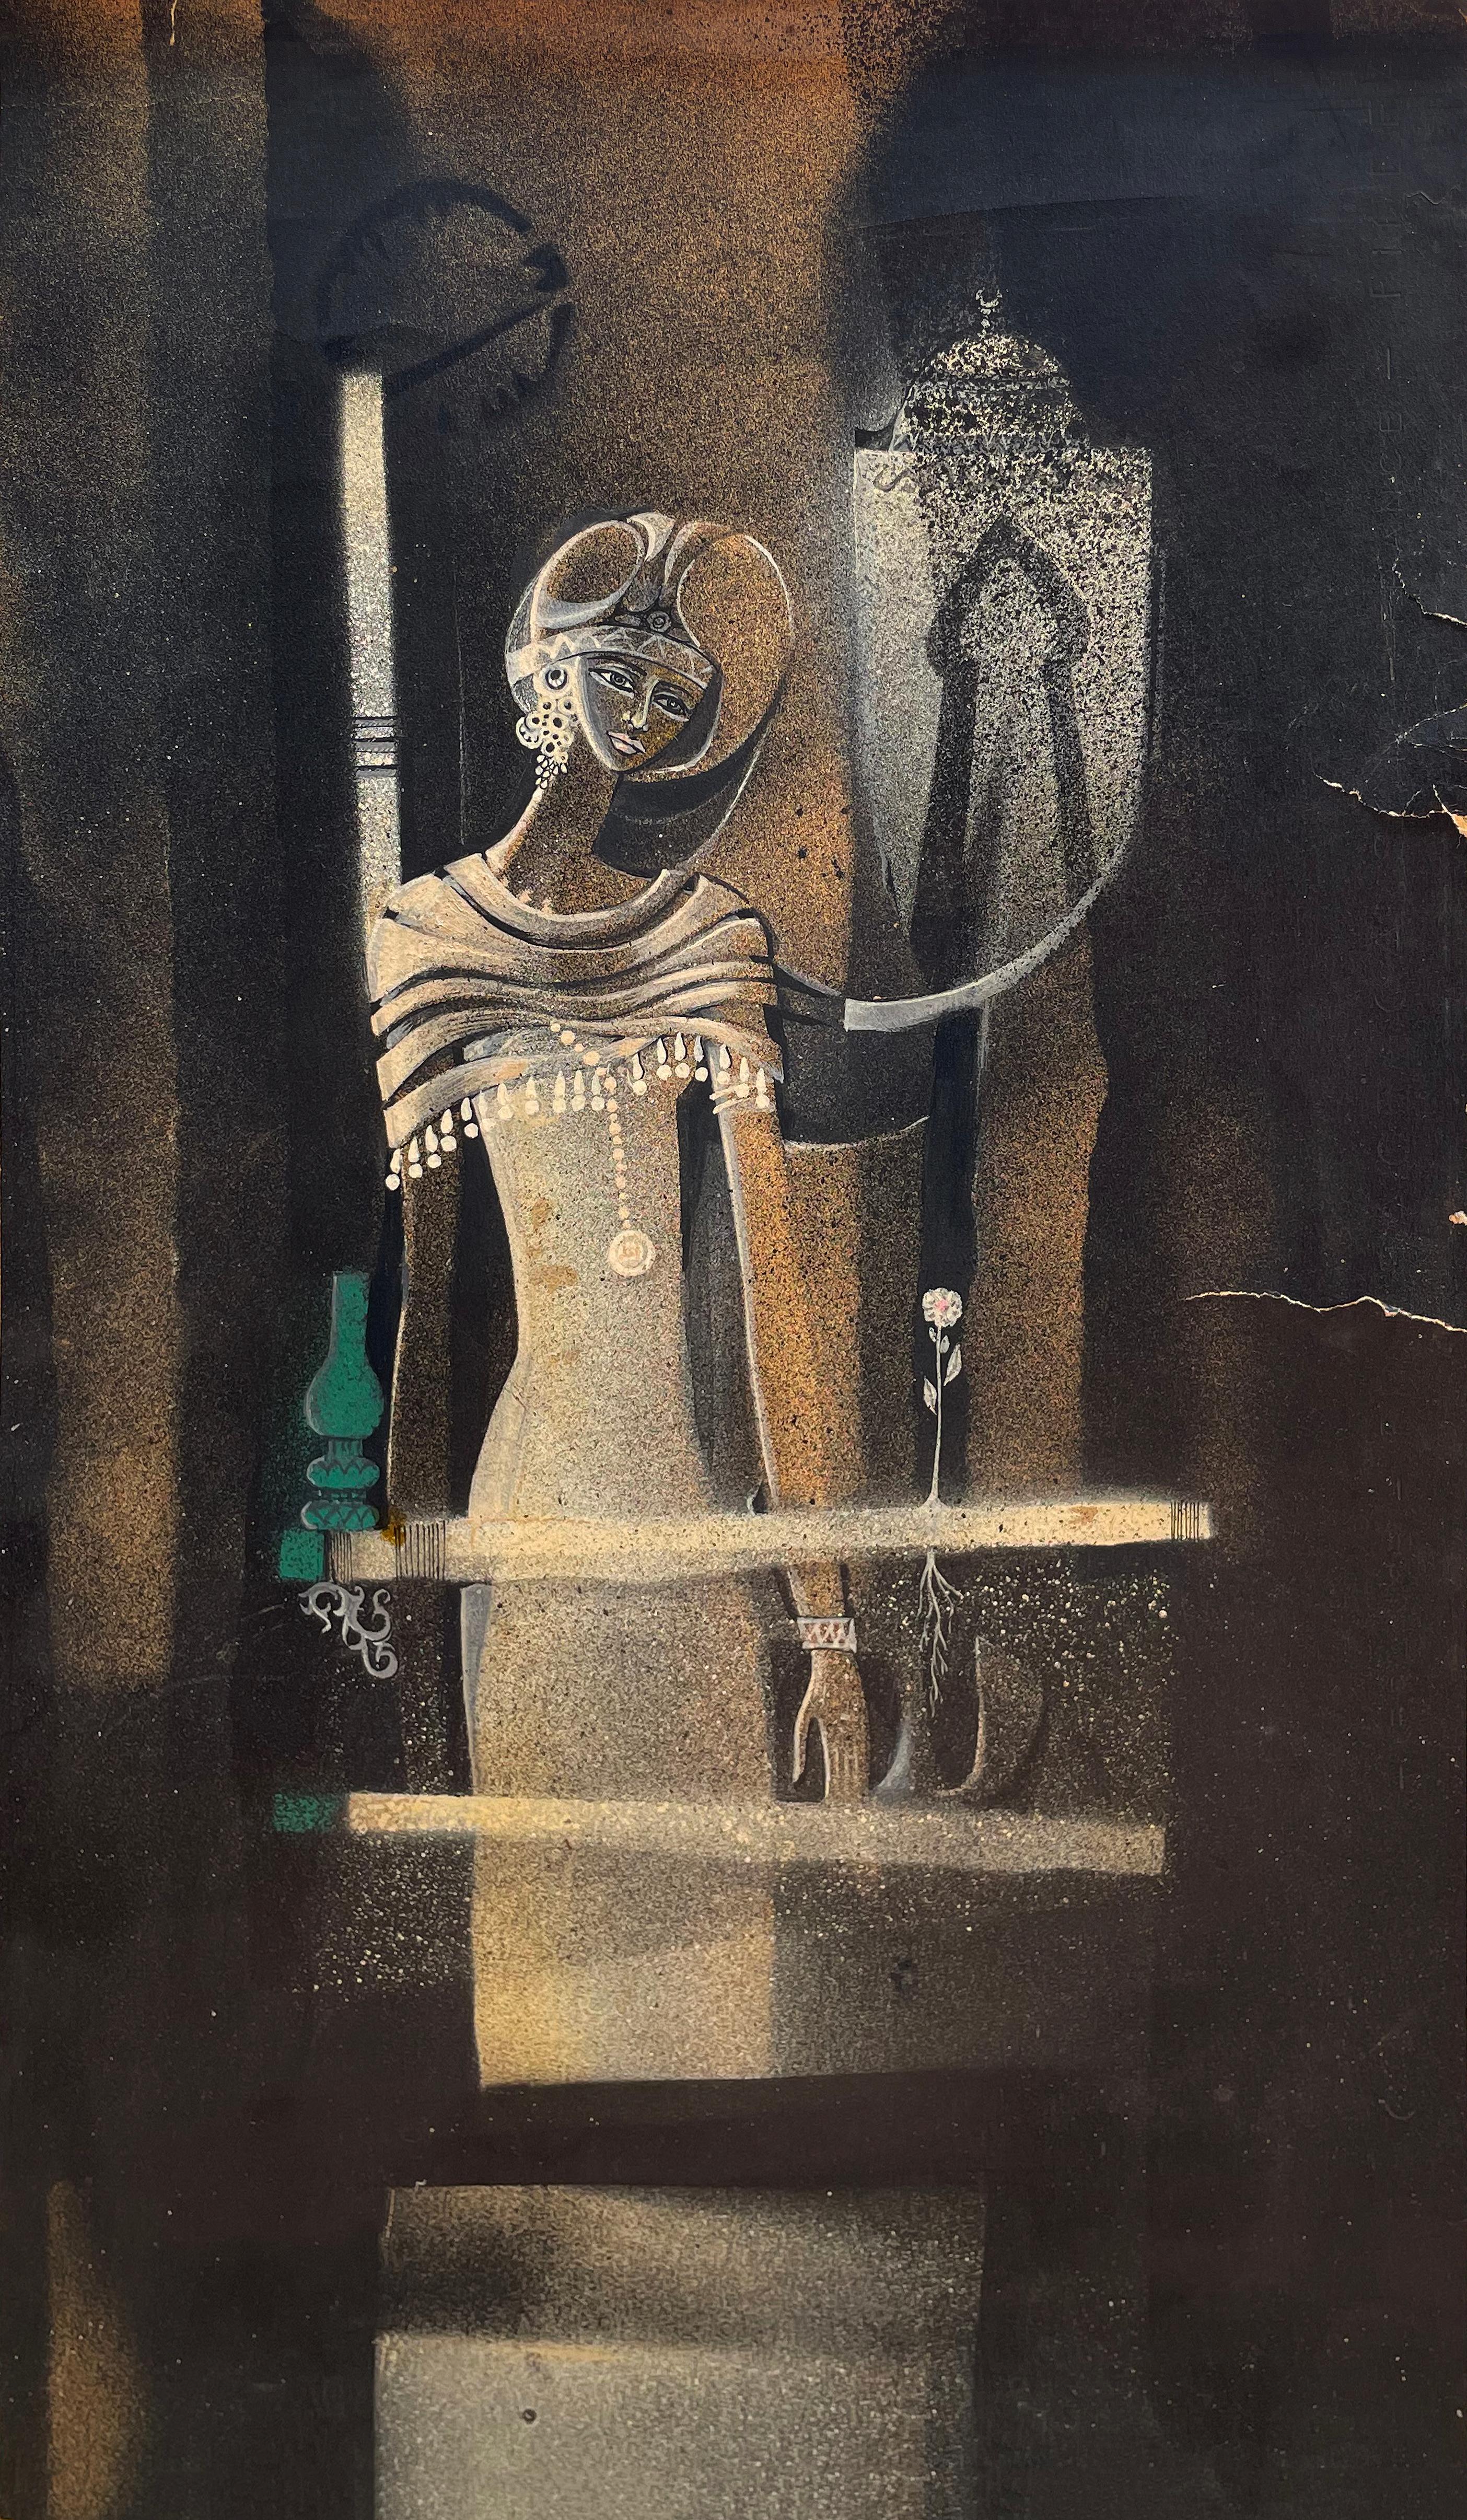 "Warten II" Gemälde 19" x 11" in von Ibrahim Abd Elmalak

Femmes Fatale, ca. 1980er Jahre
Tinte und Acryl auf Papier. Unterzeichnet
Unterzeichnet


Die Auswahl der Zeichnungen von Abd Elmalak spiegelt eine kompositorische Methode wider, die auf frei